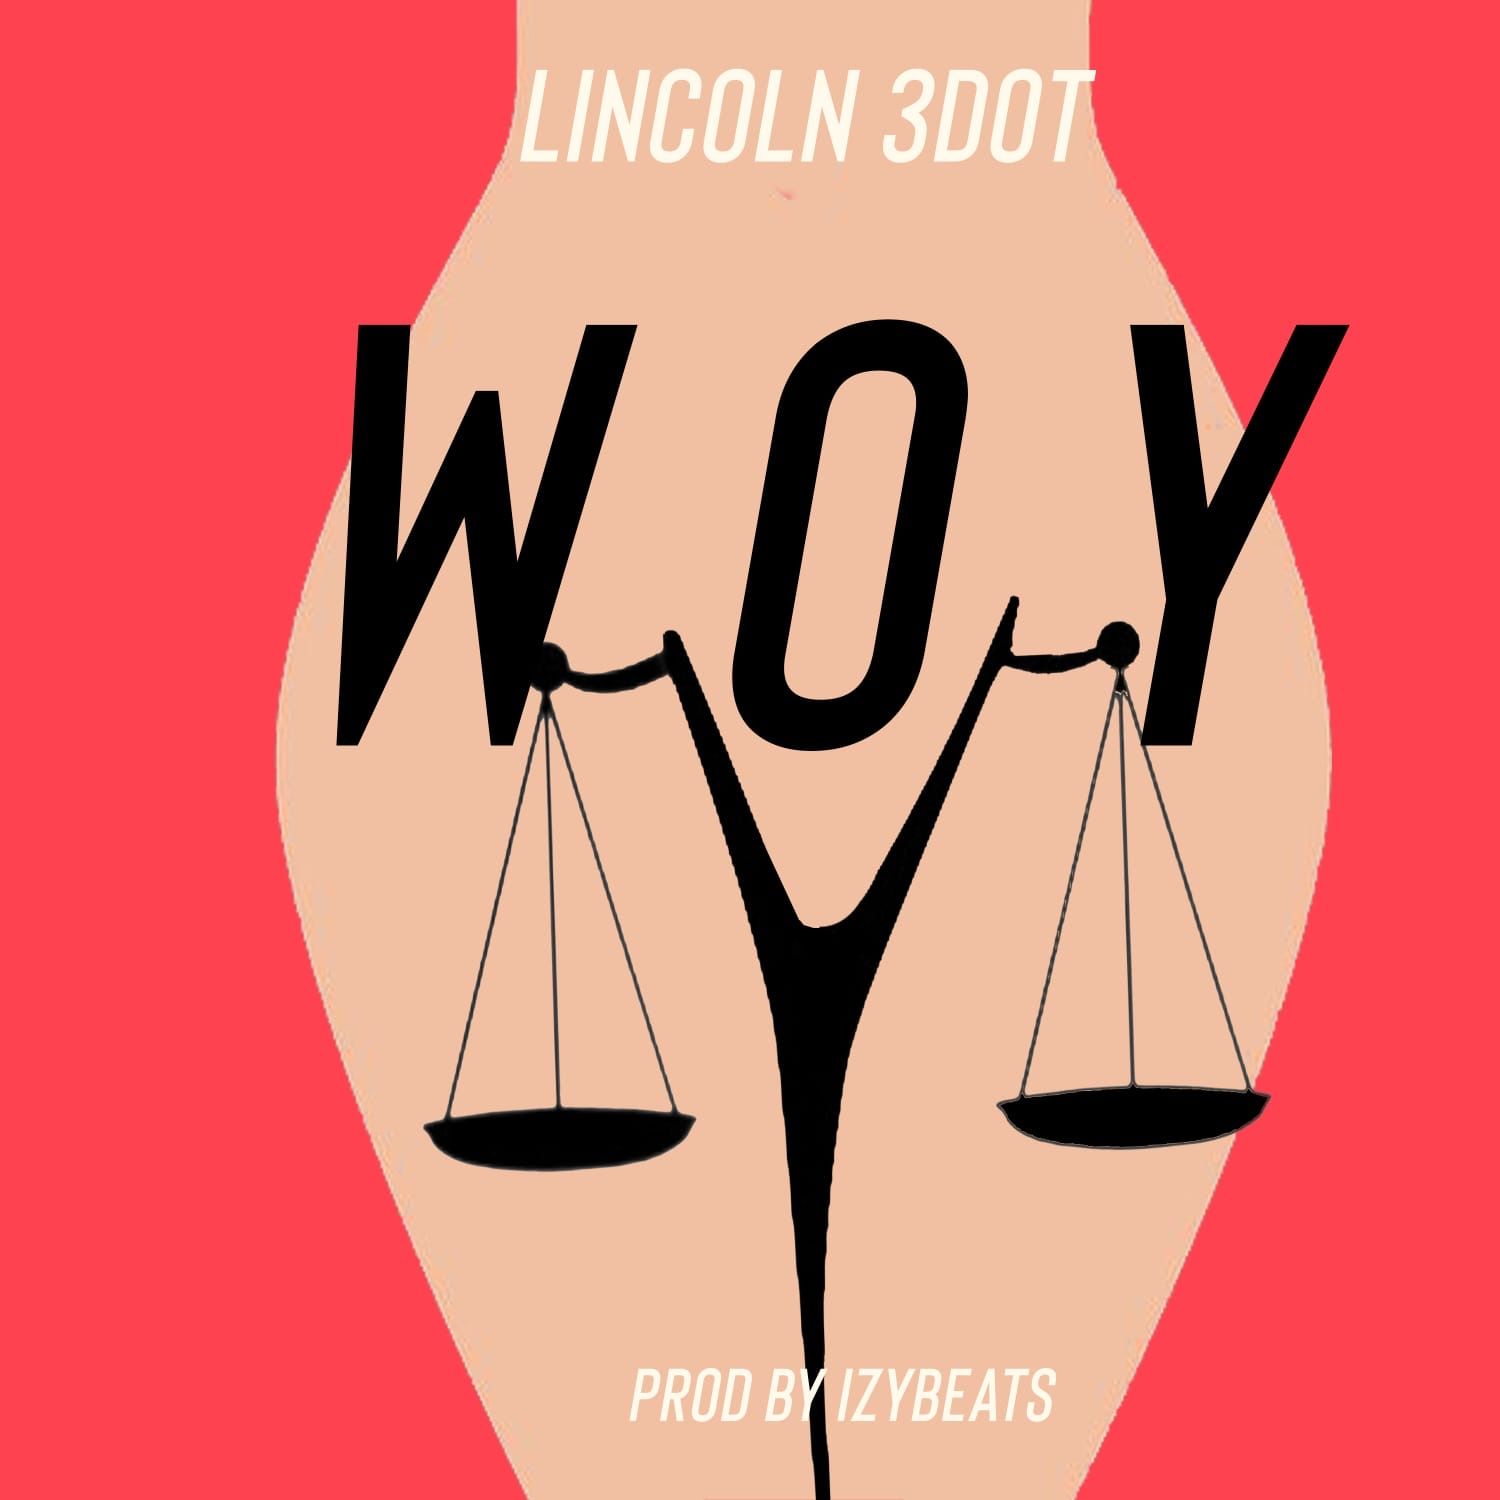 ডাউনলোড করুন Lincoln 3Dot - Woy